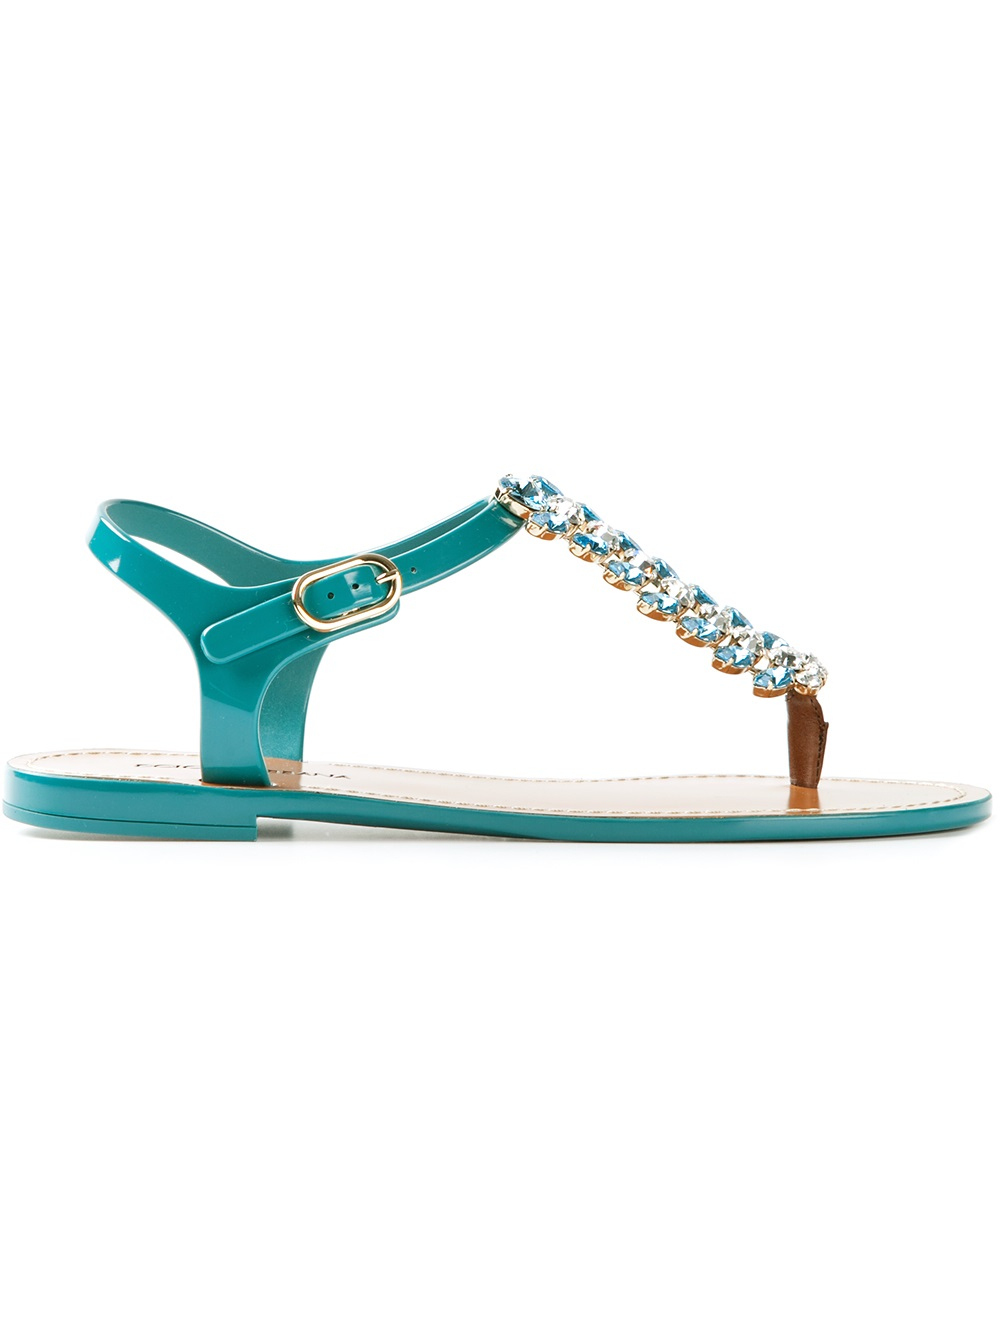 Dolce & gabbana Embellished Sandals in Blue | Lyst